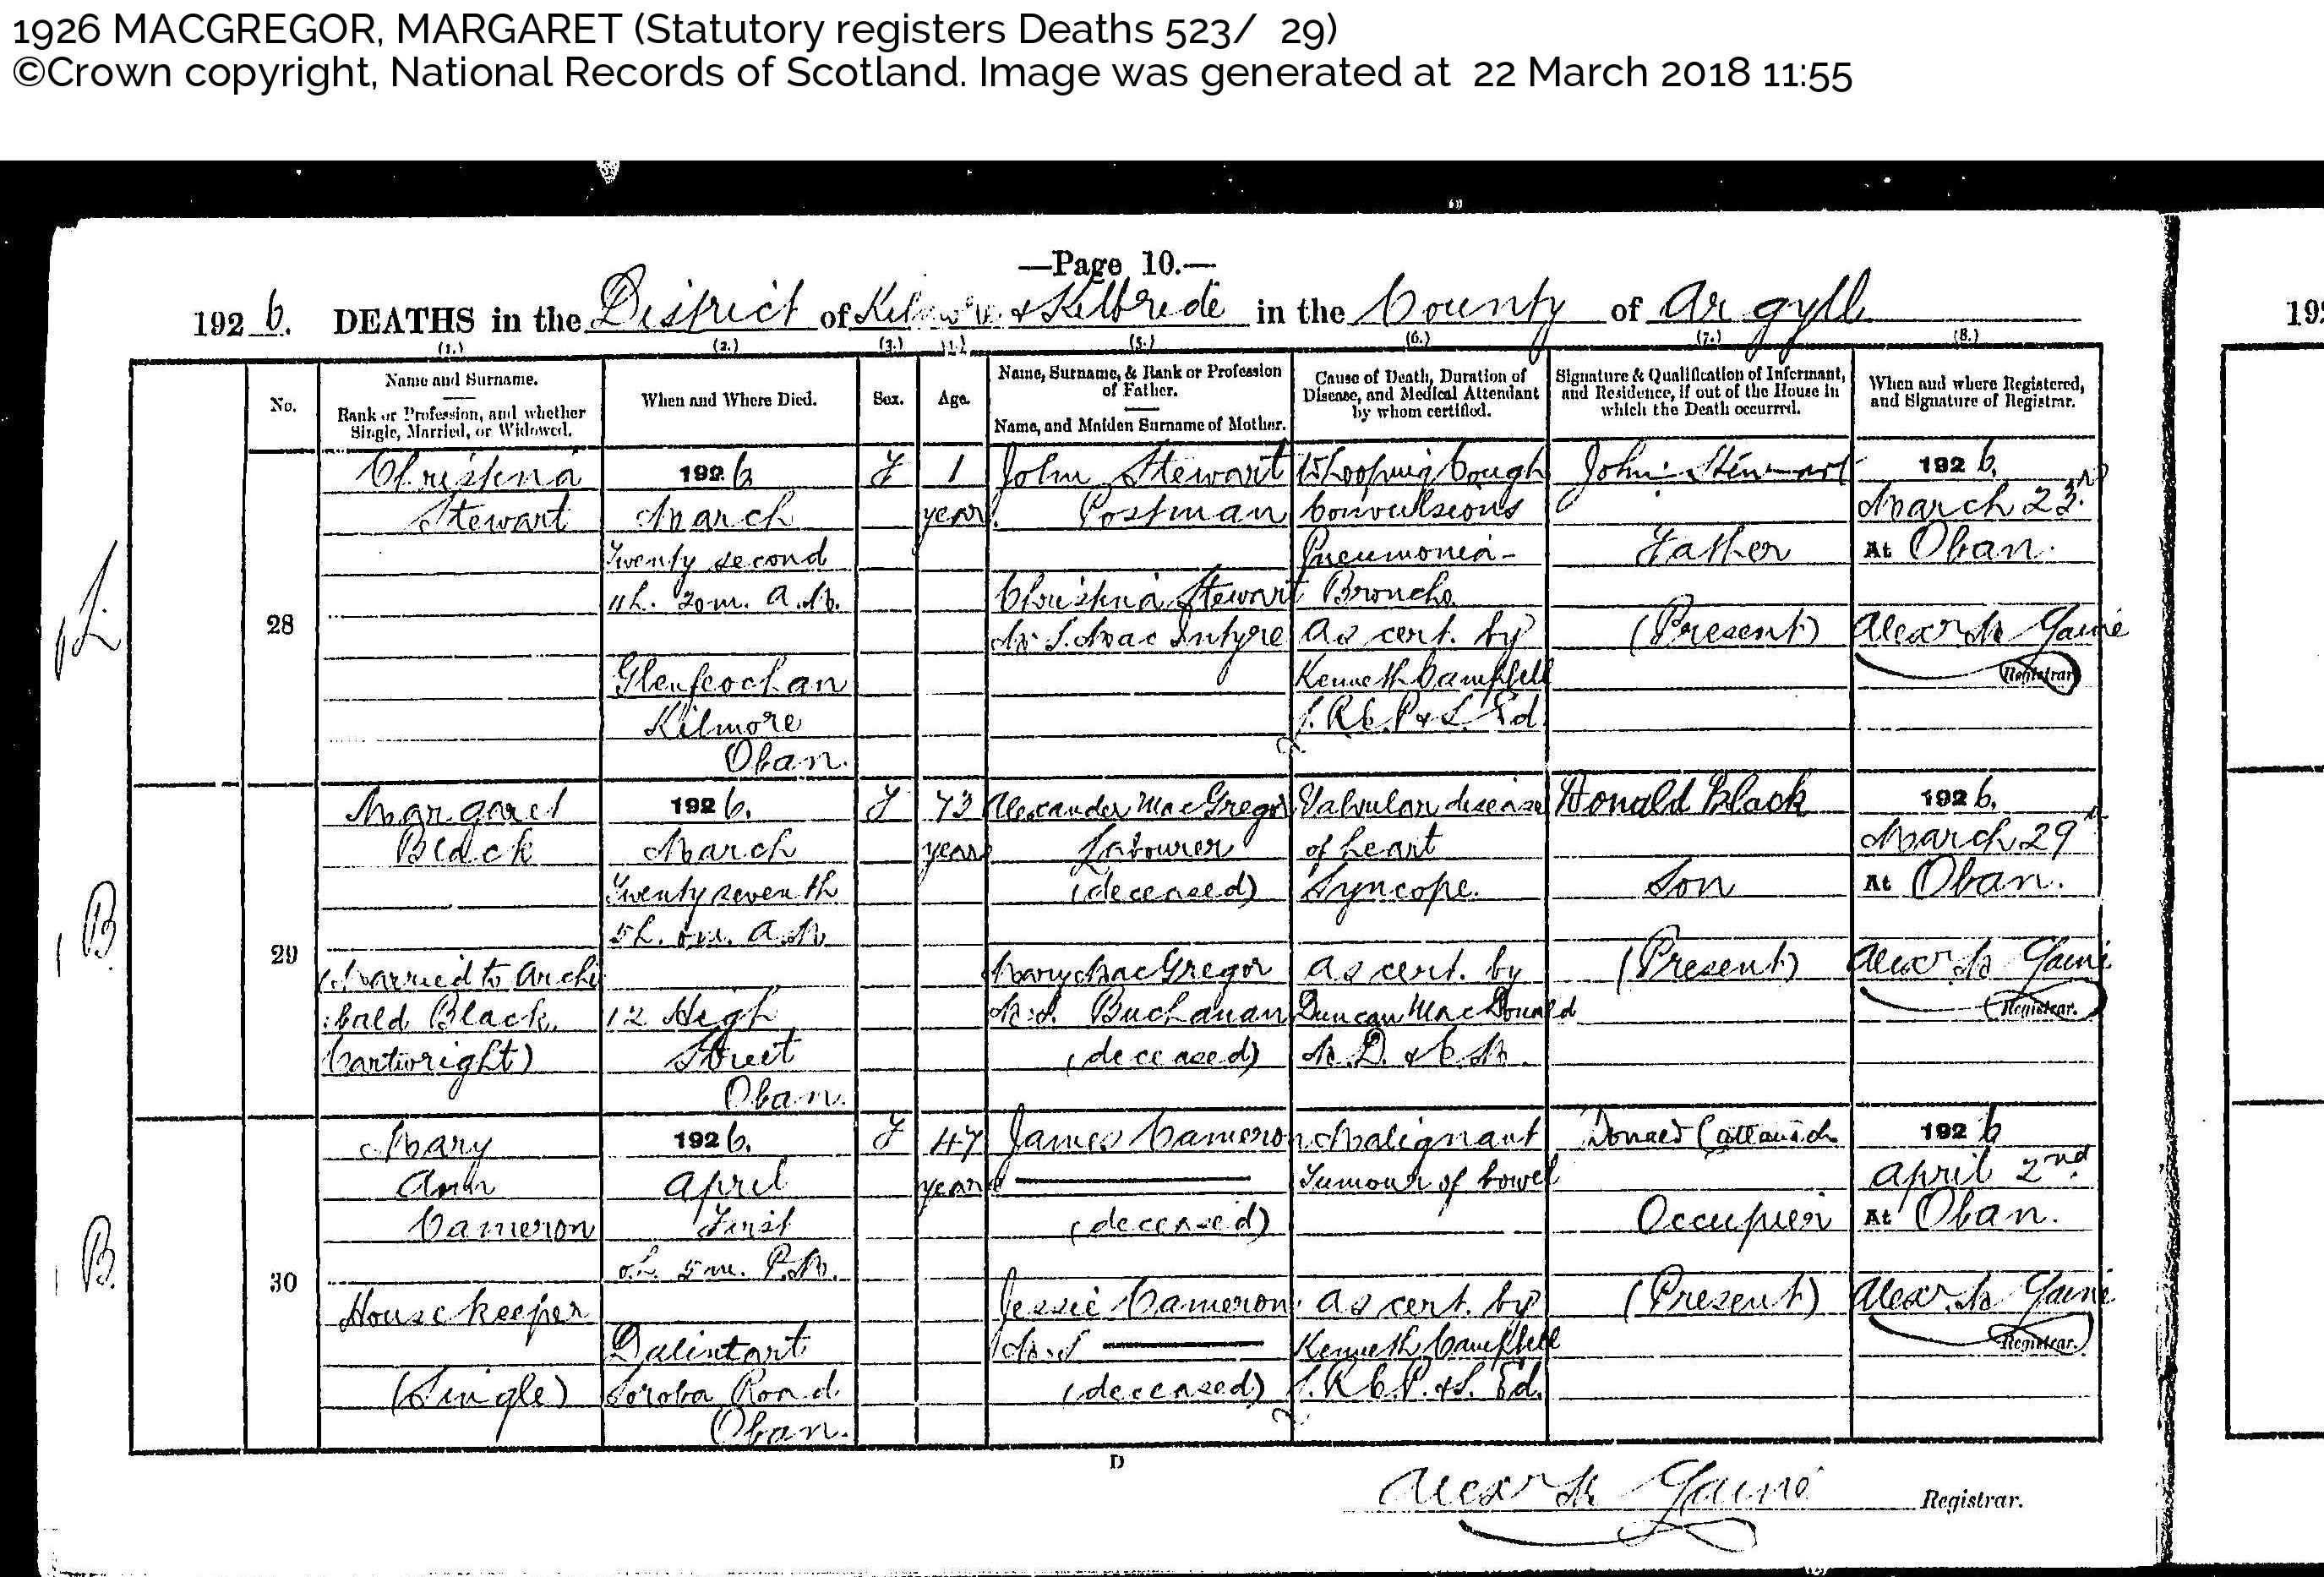 MargaretMcGregor(Black)_D1926 Oban Argyll, April 1, 1926